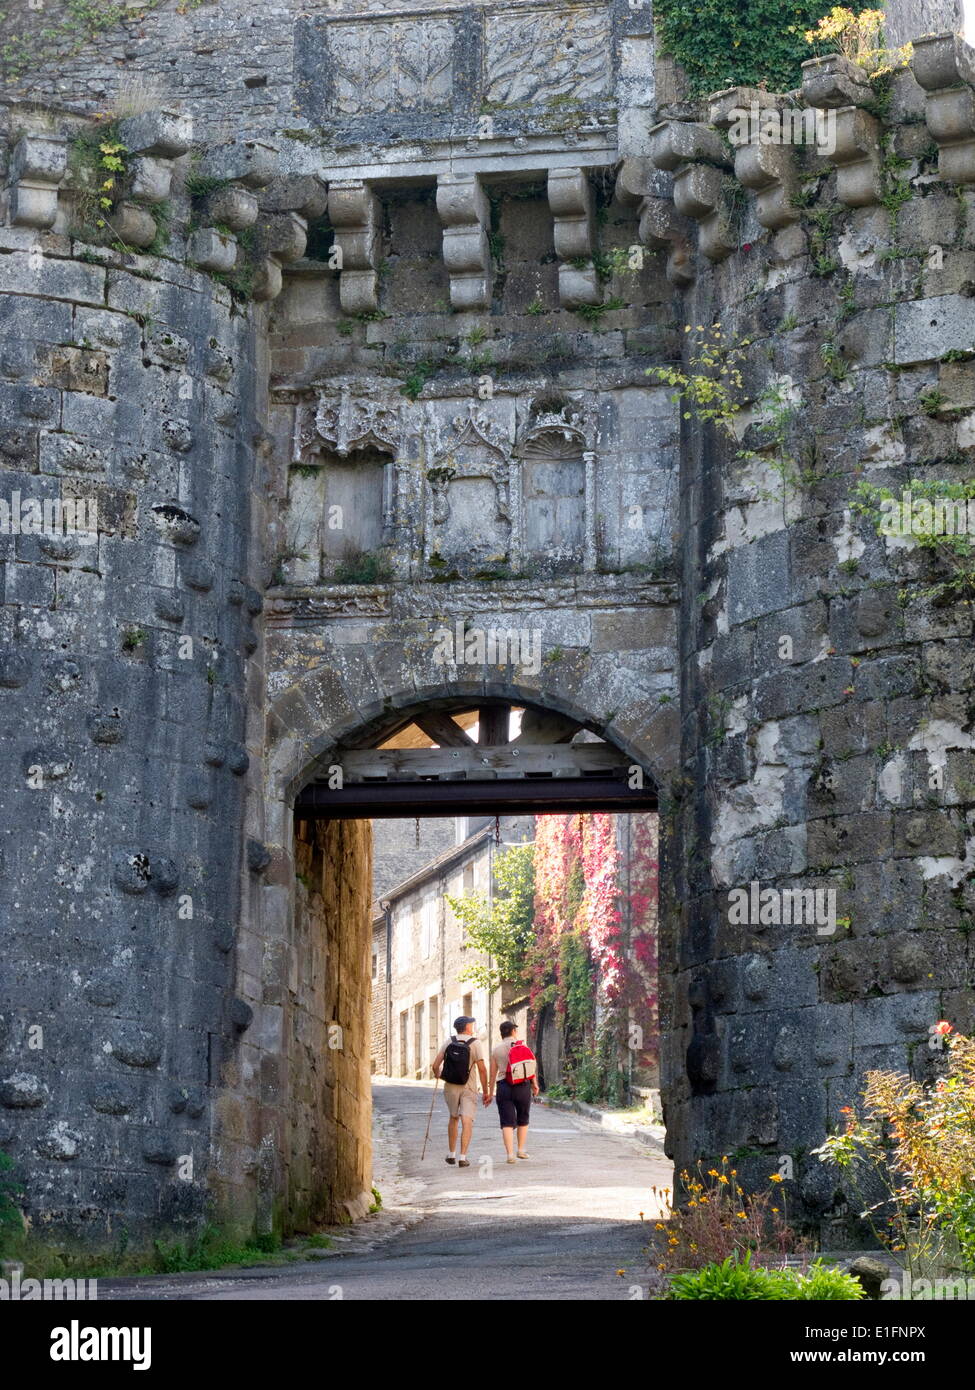 Ancienne porte de la ville, Vézelay, Bourgogne, France, Europe Banque D'Images